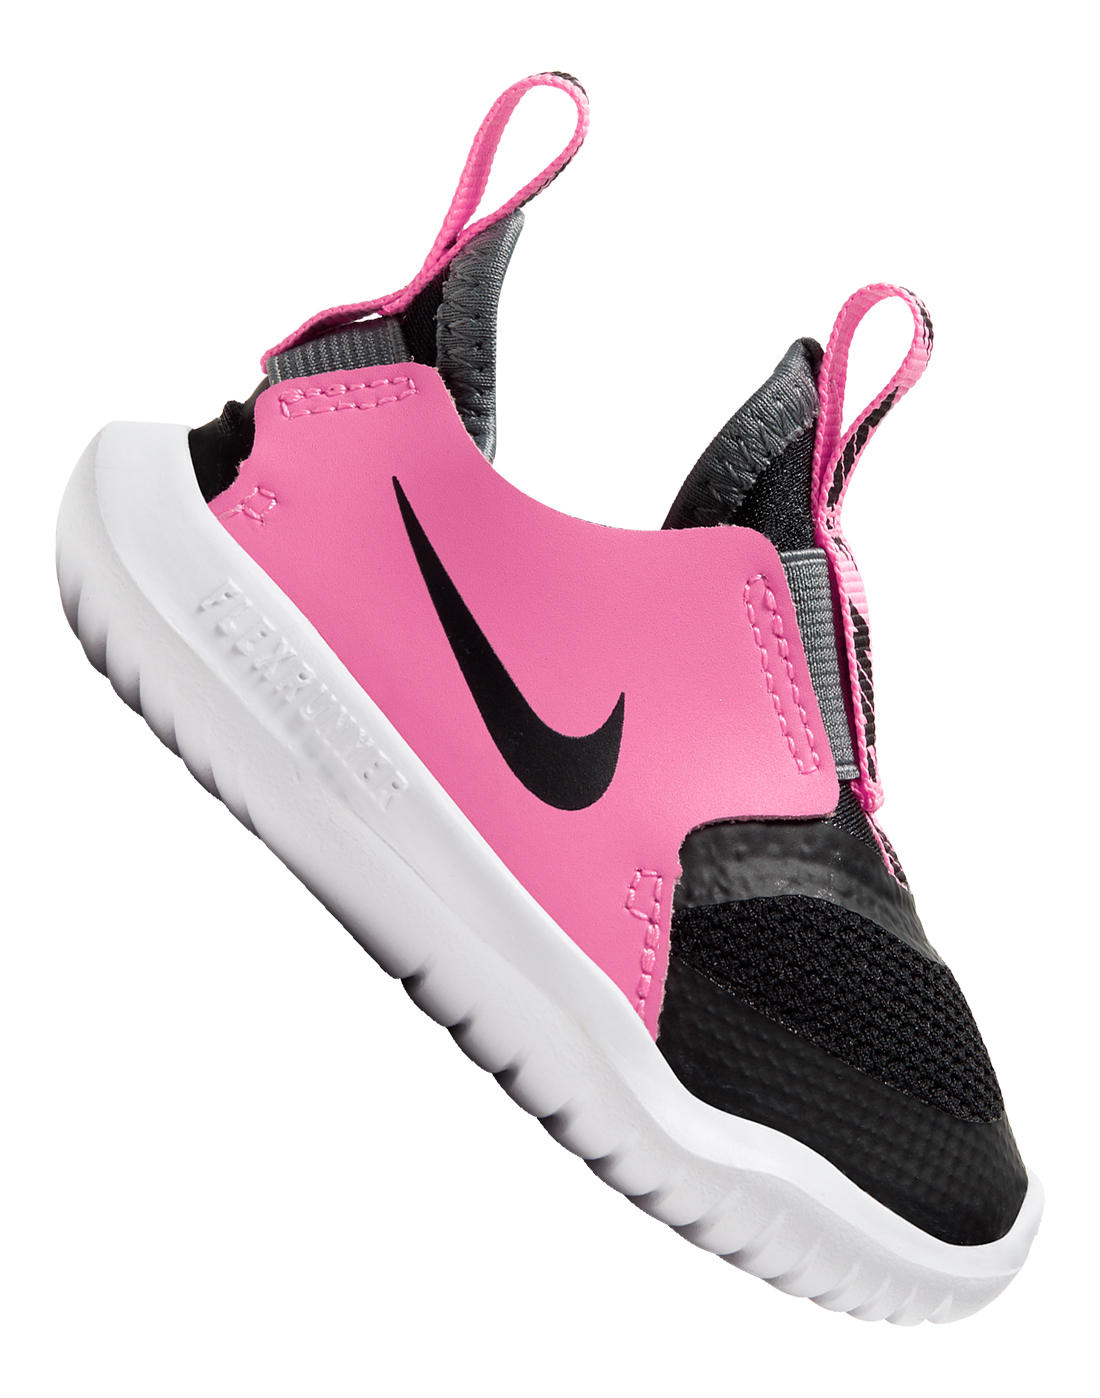 Nike Infant Girls Flex Runner - Black | Life Style Sports UK